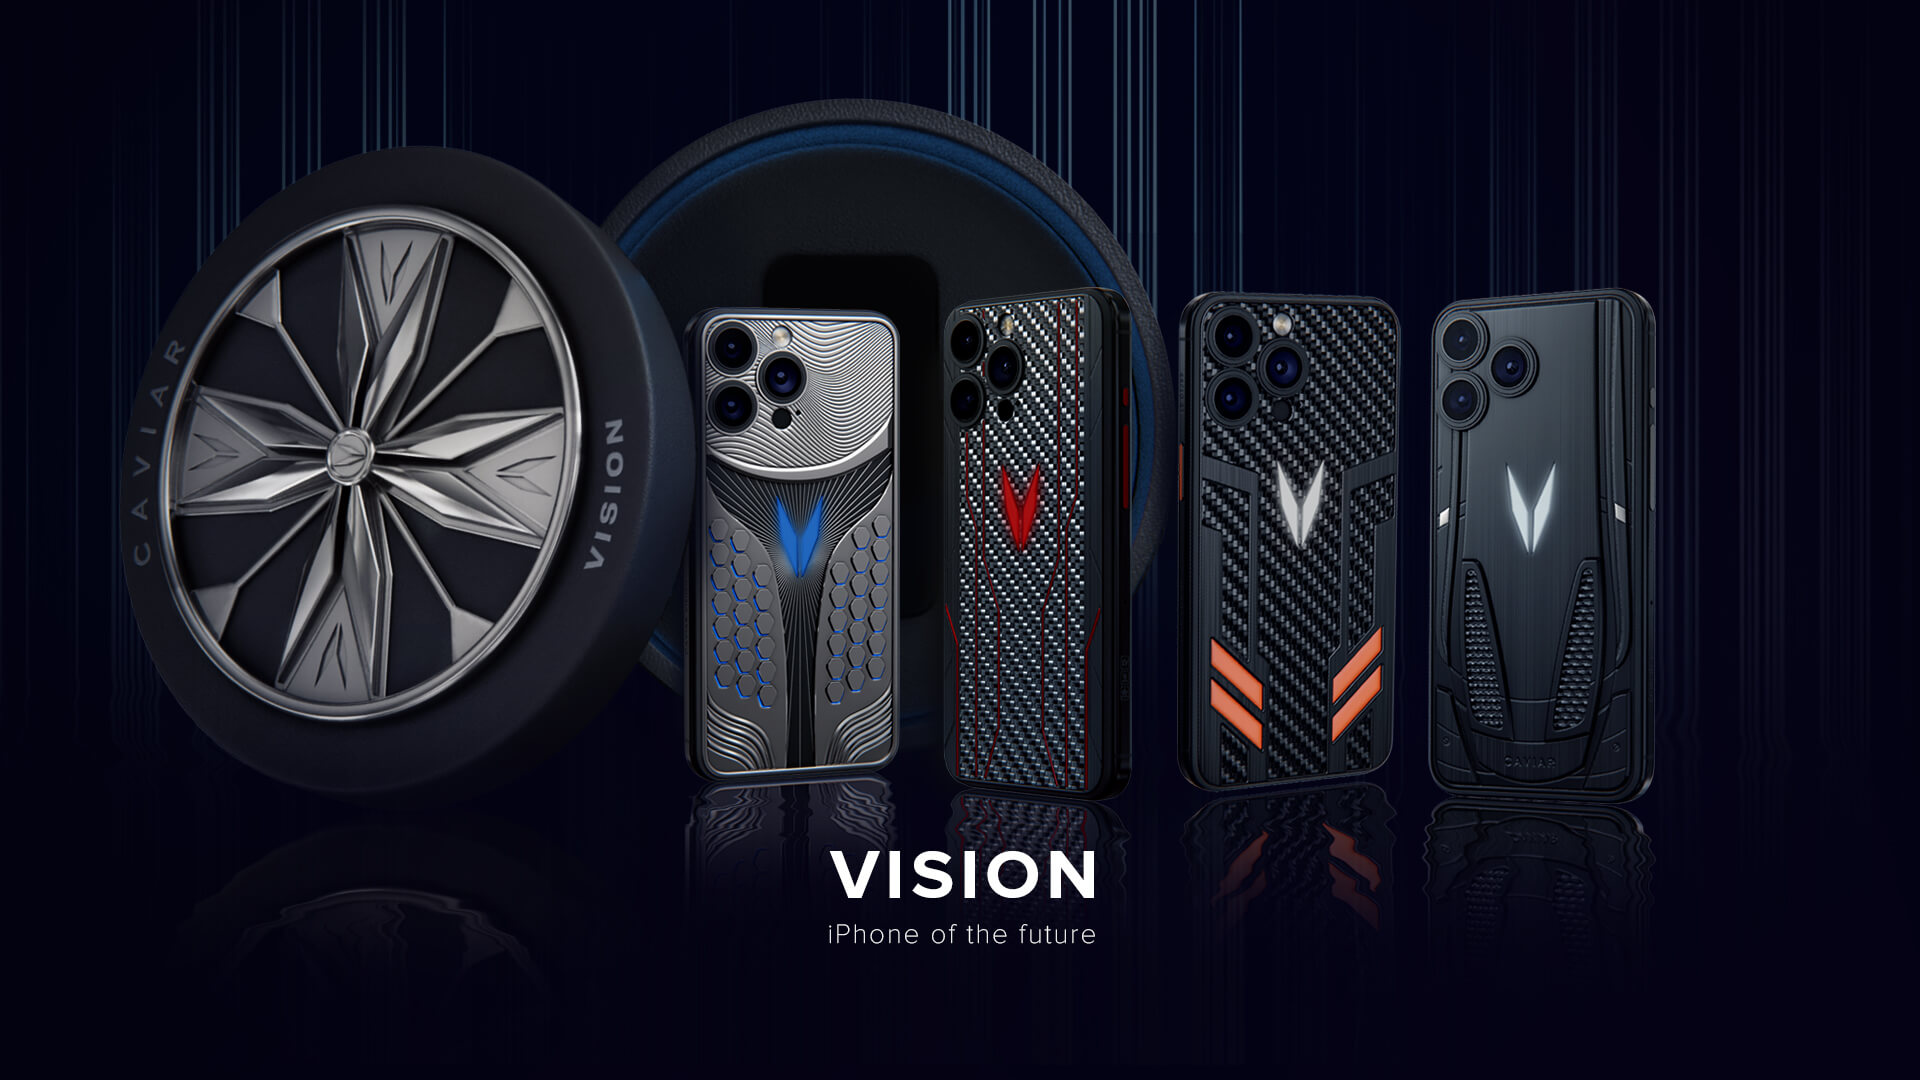 Caviar представил Vision - первую коллекцию iPhone 15 - свое видение iPhone будущего, вдохновленное концепт-карами.